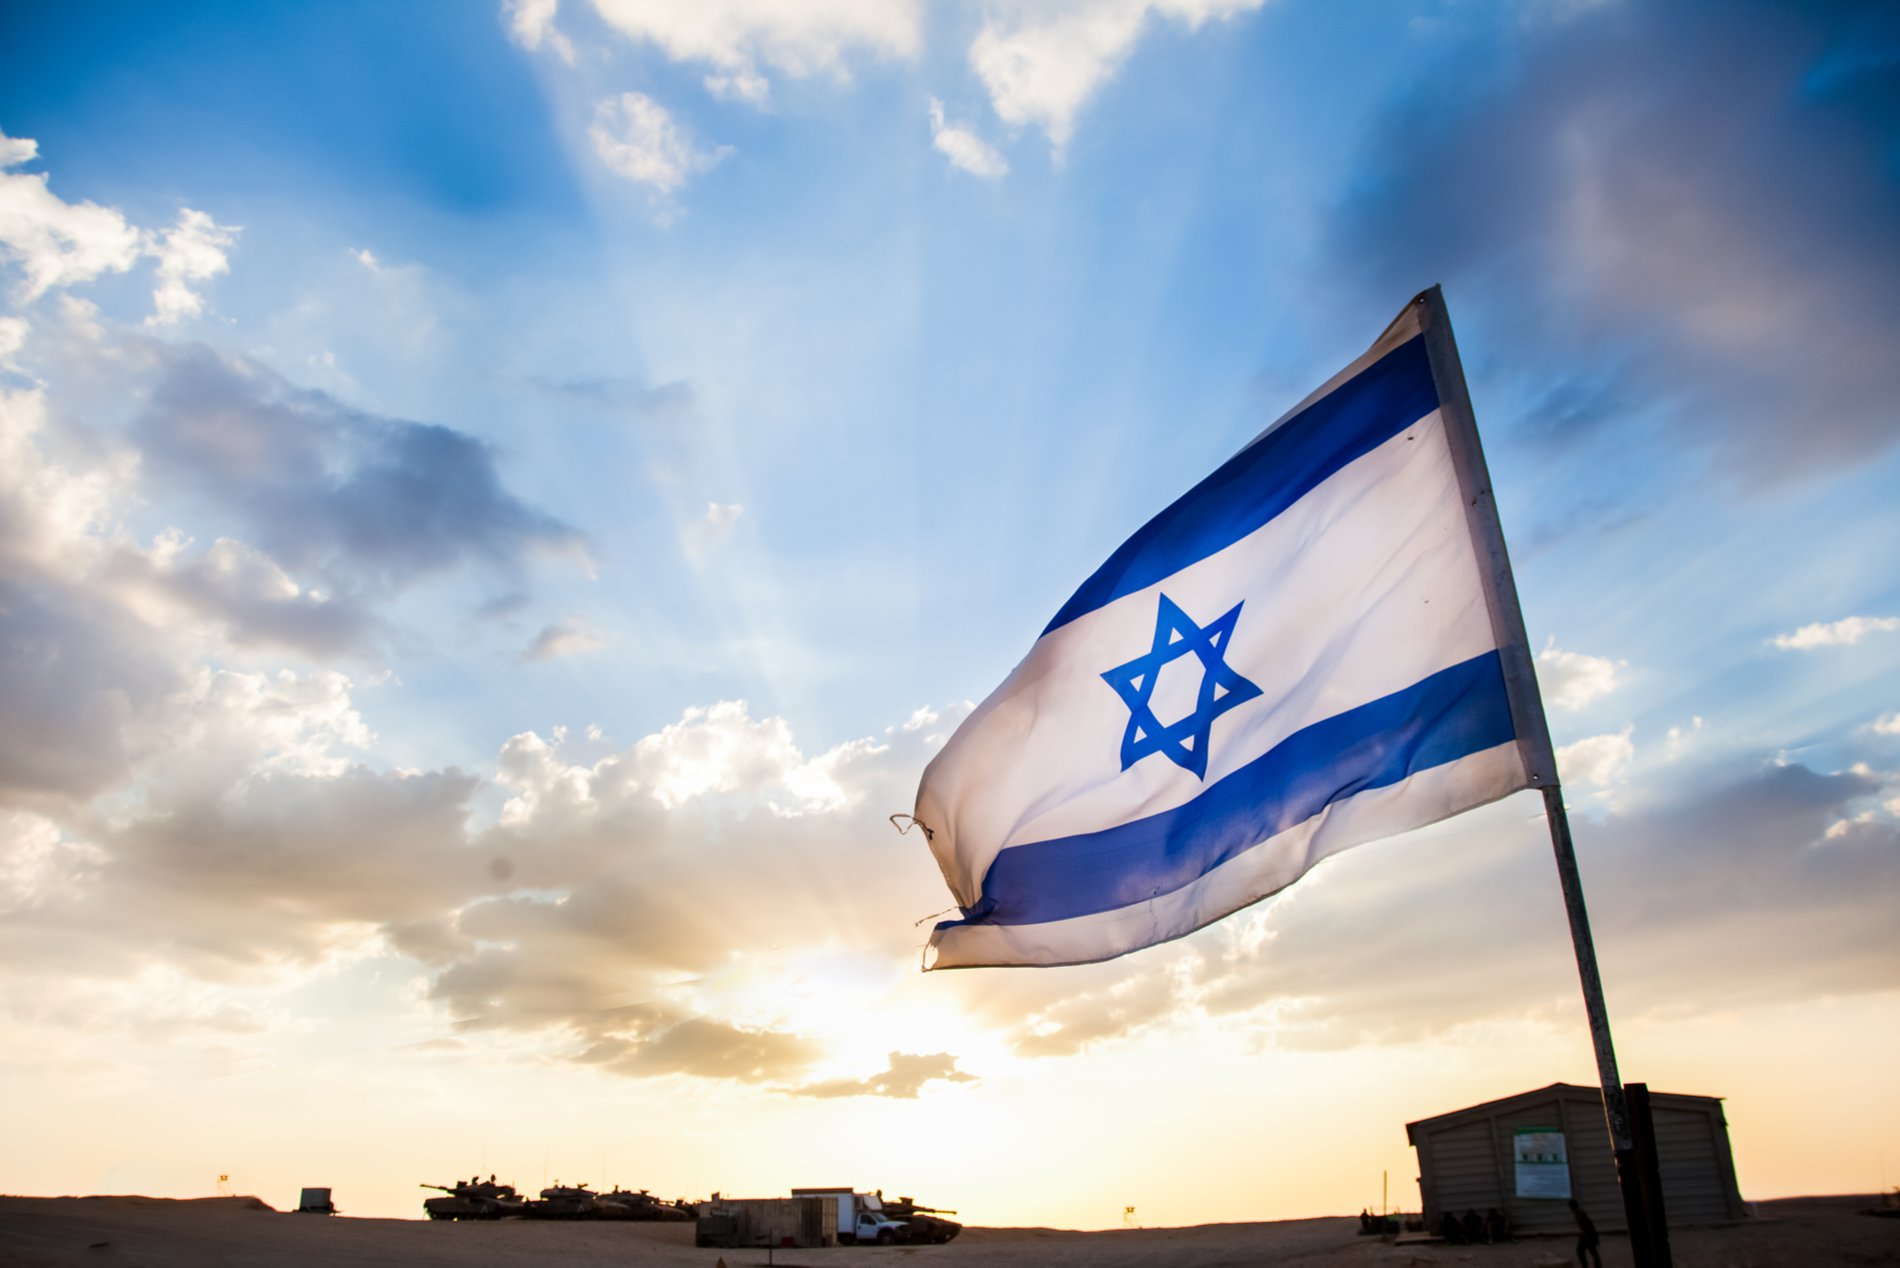 Israeli Startups Raised $600 Million Through ICOs In 2018: Report